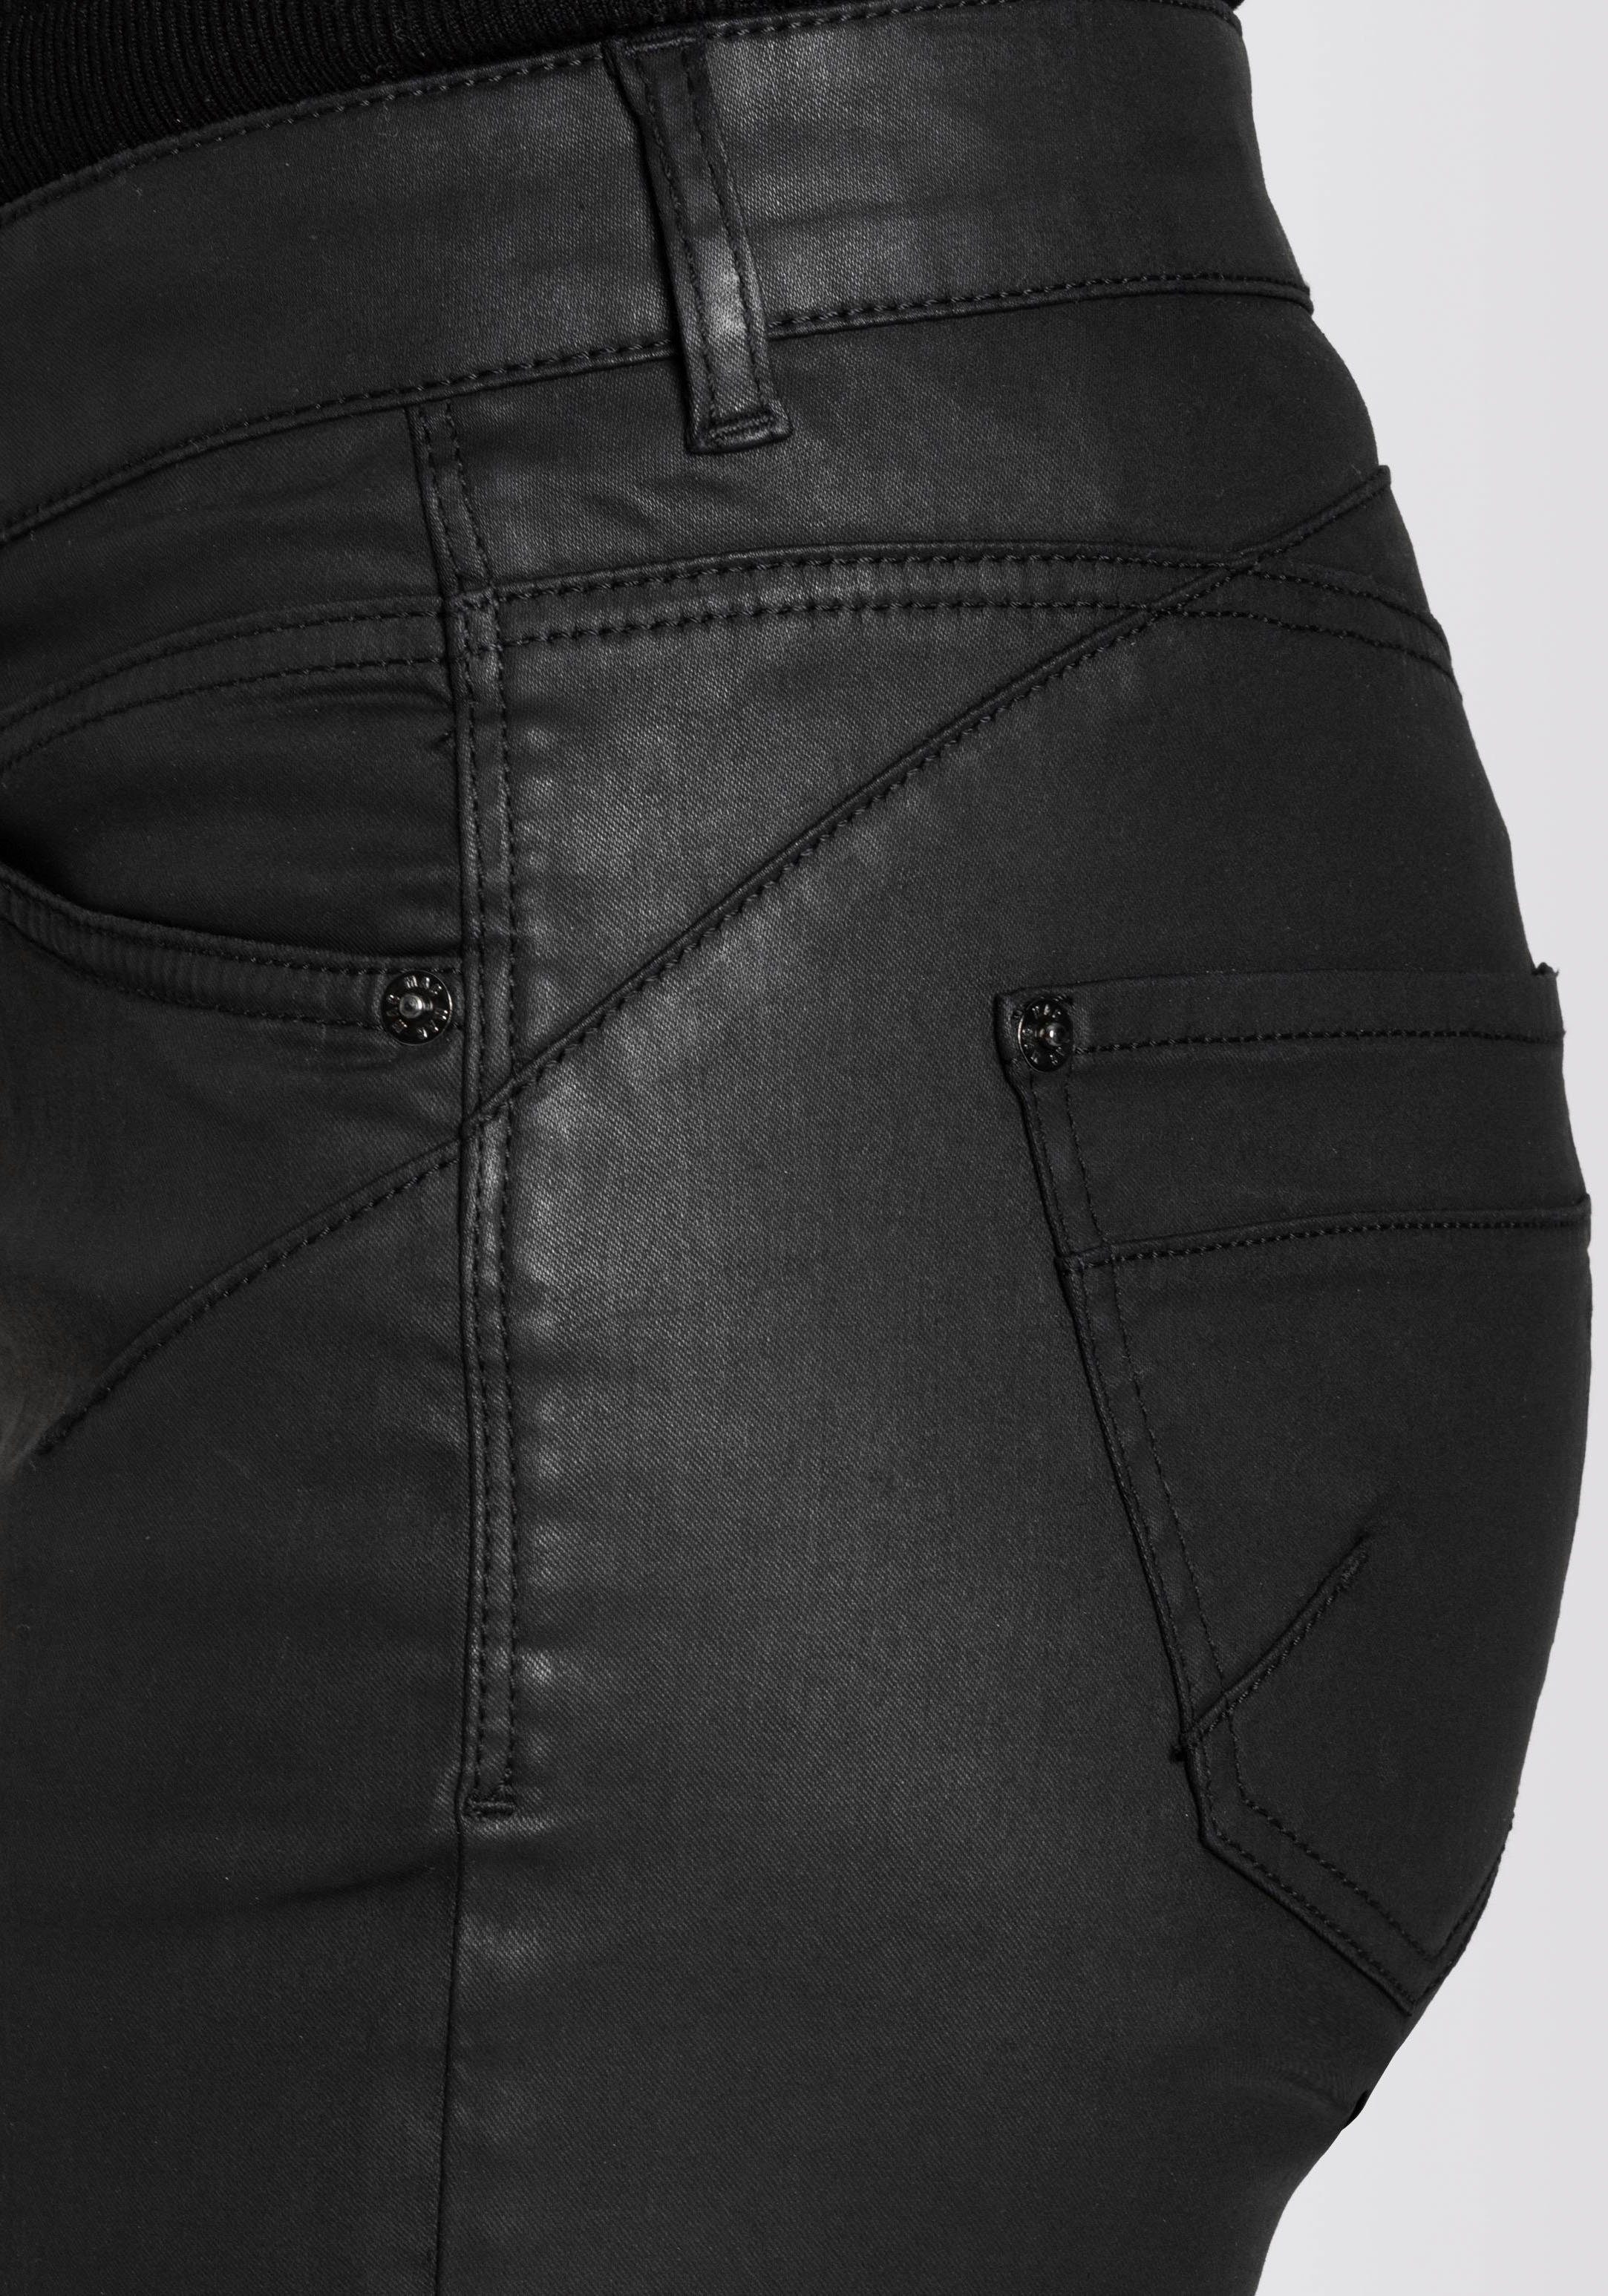 Reißverschluss-Detail Bein am Röhrenhose RICH mit SLIM coating chic black MAC